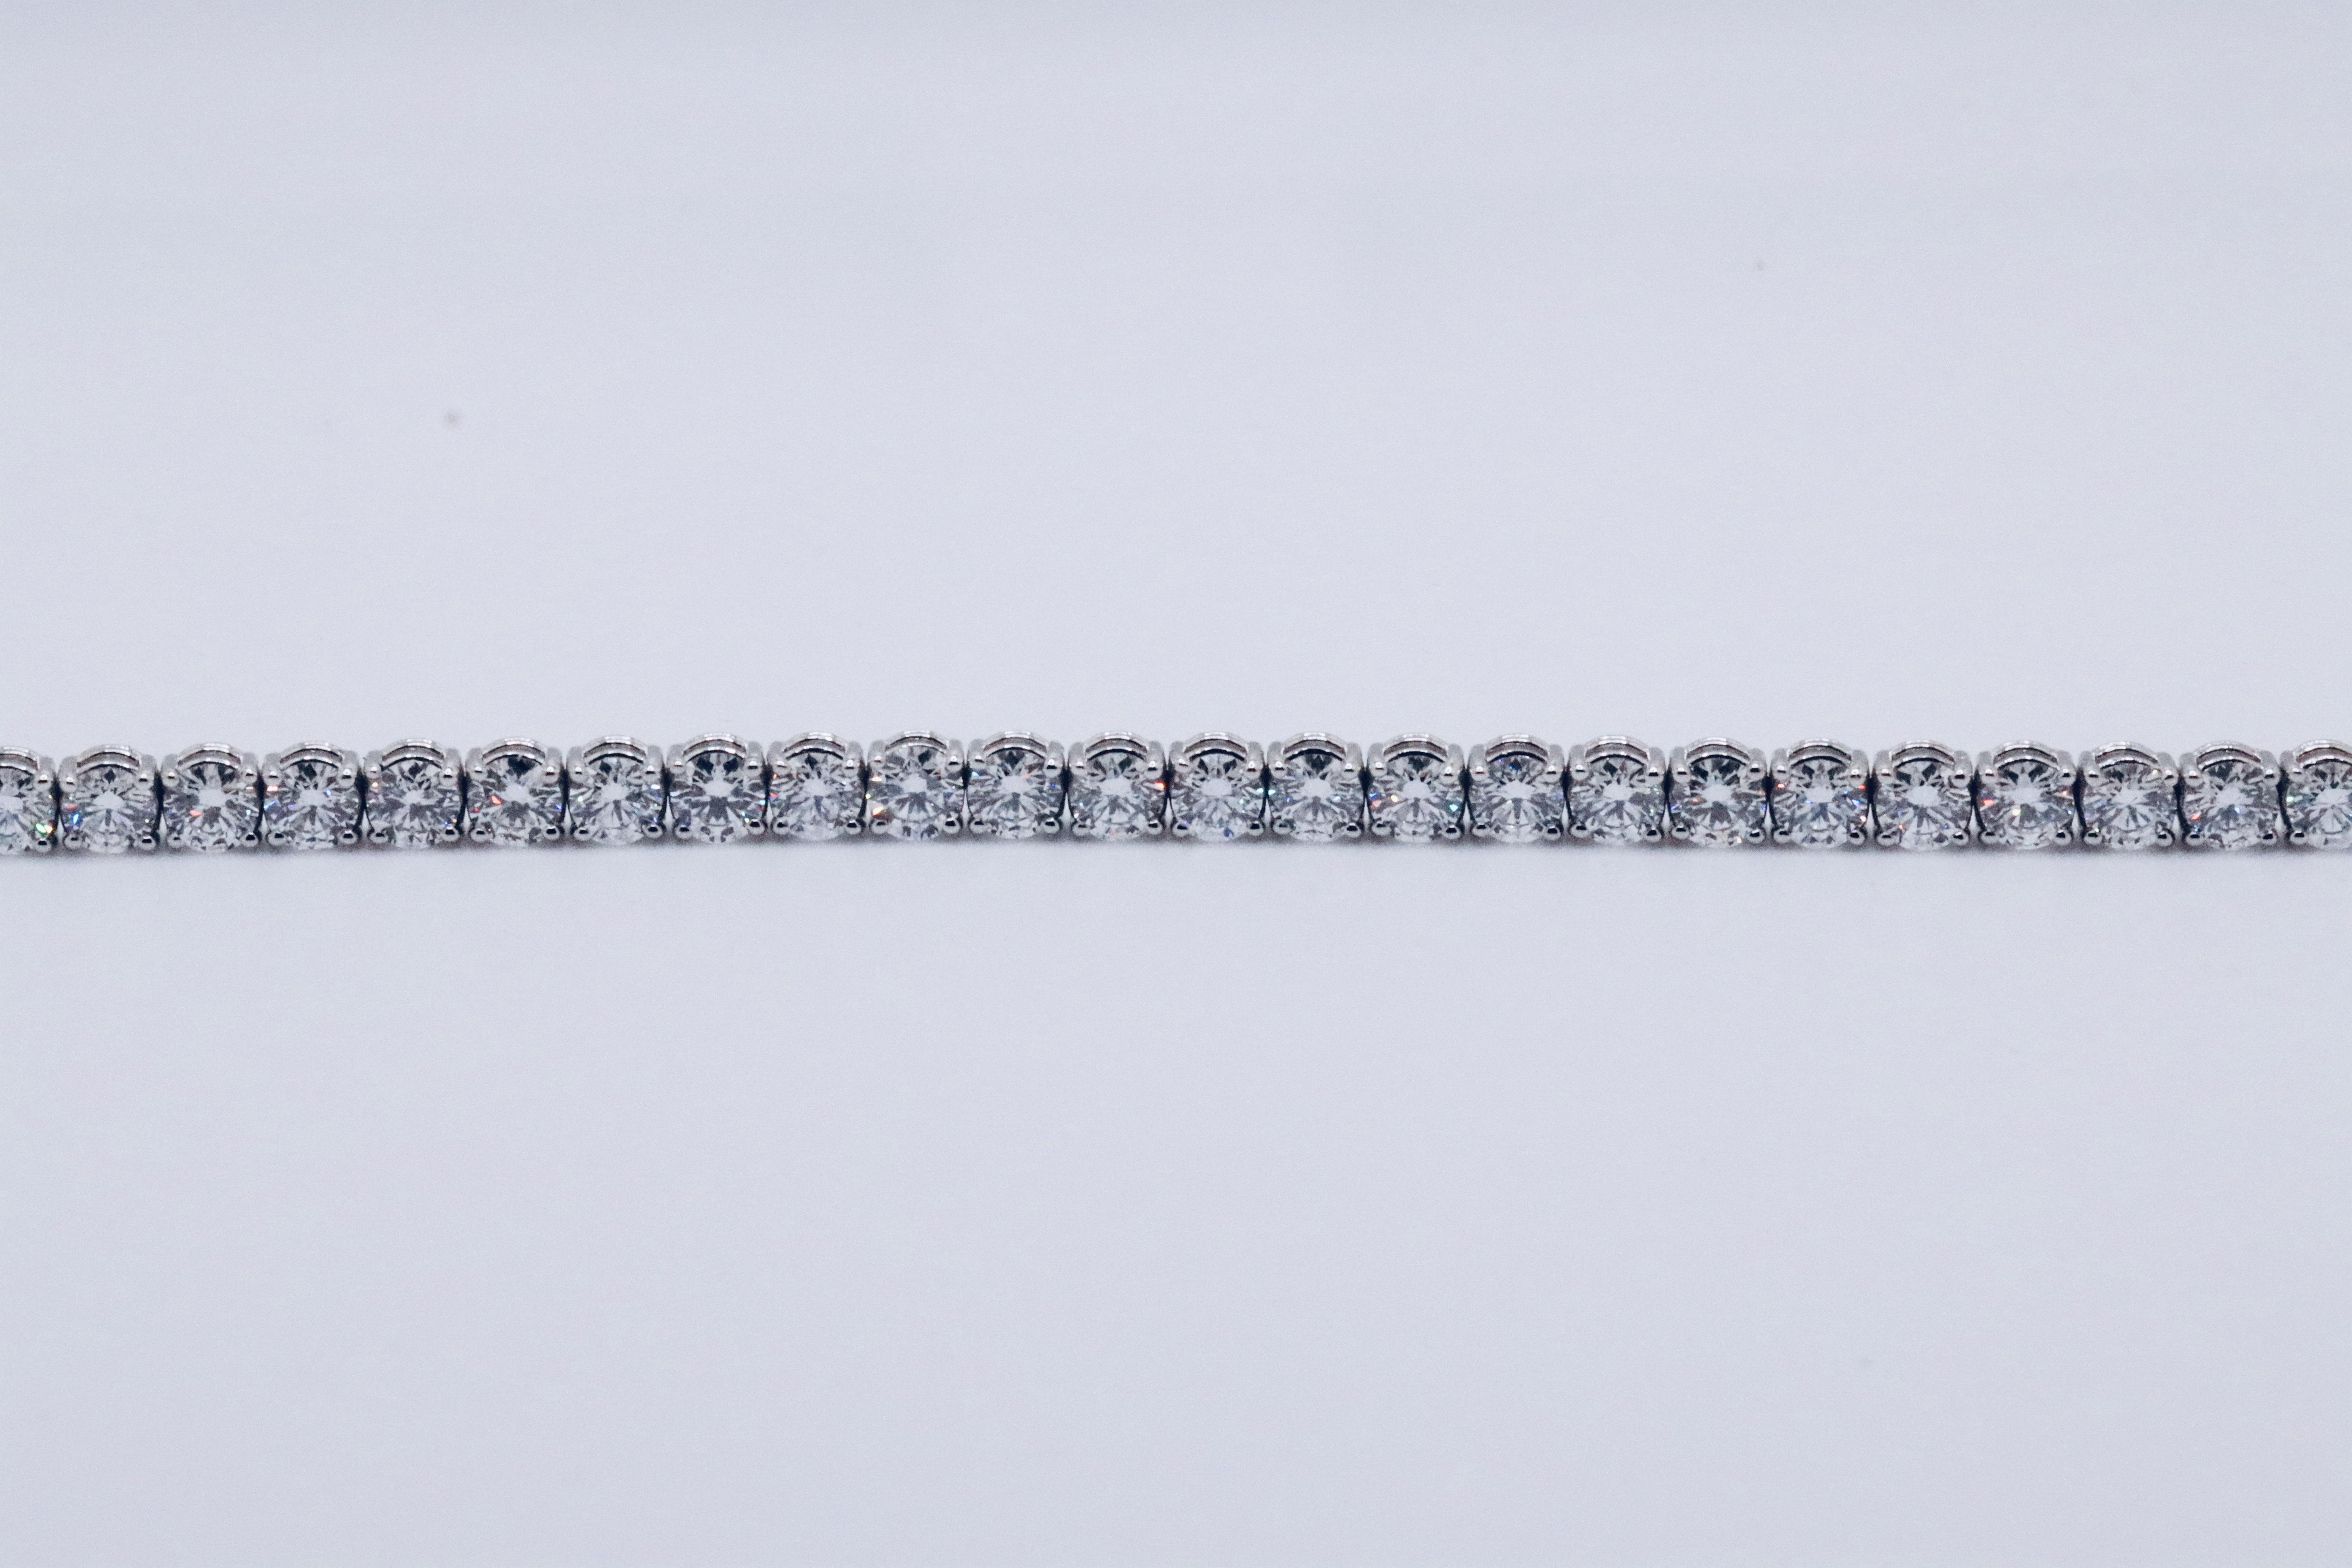 Round Brilliant Cut 14 Carat Diamond Tennis Bracelet D Colour VVS Clarity - 18Kt White Gold - IGI - Image 16 of 31